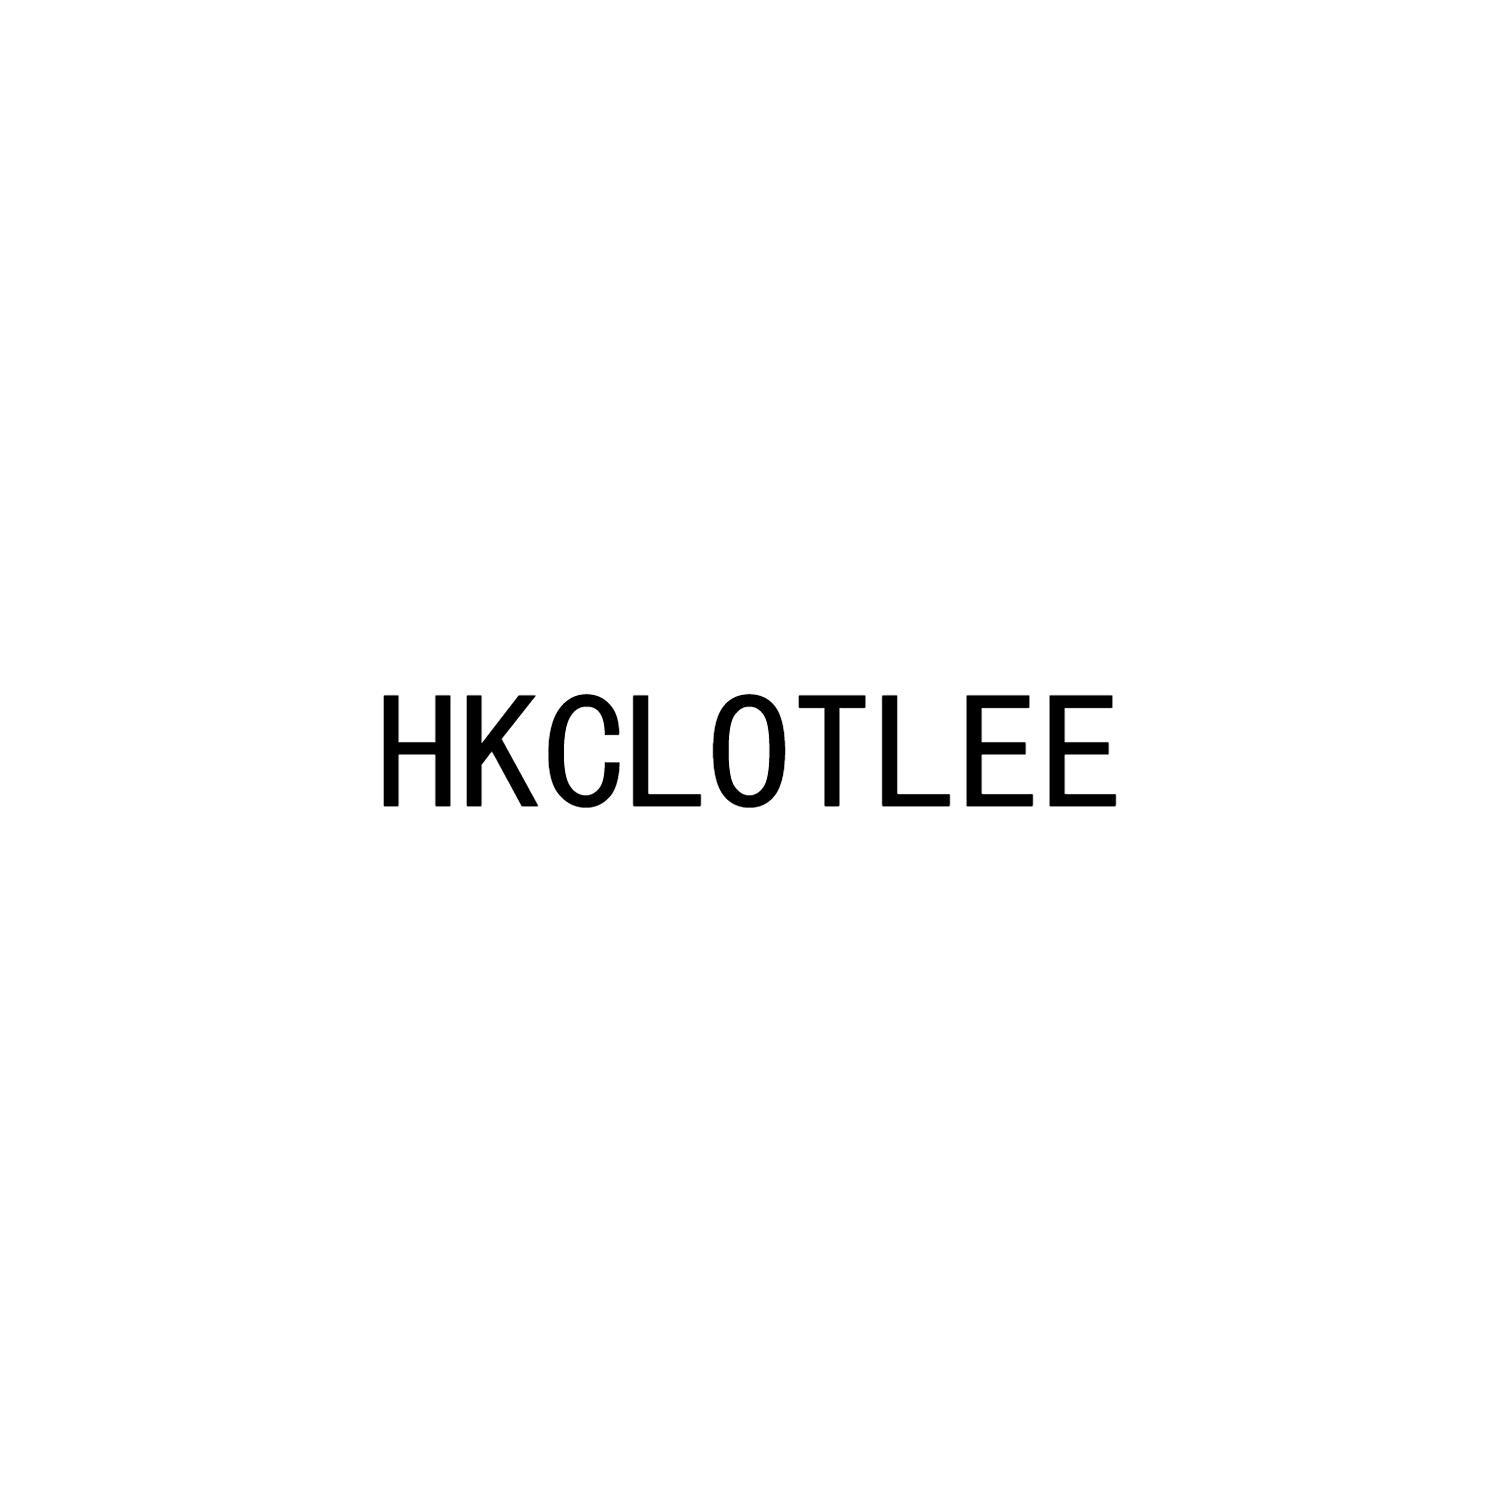 HKCLOTLEE